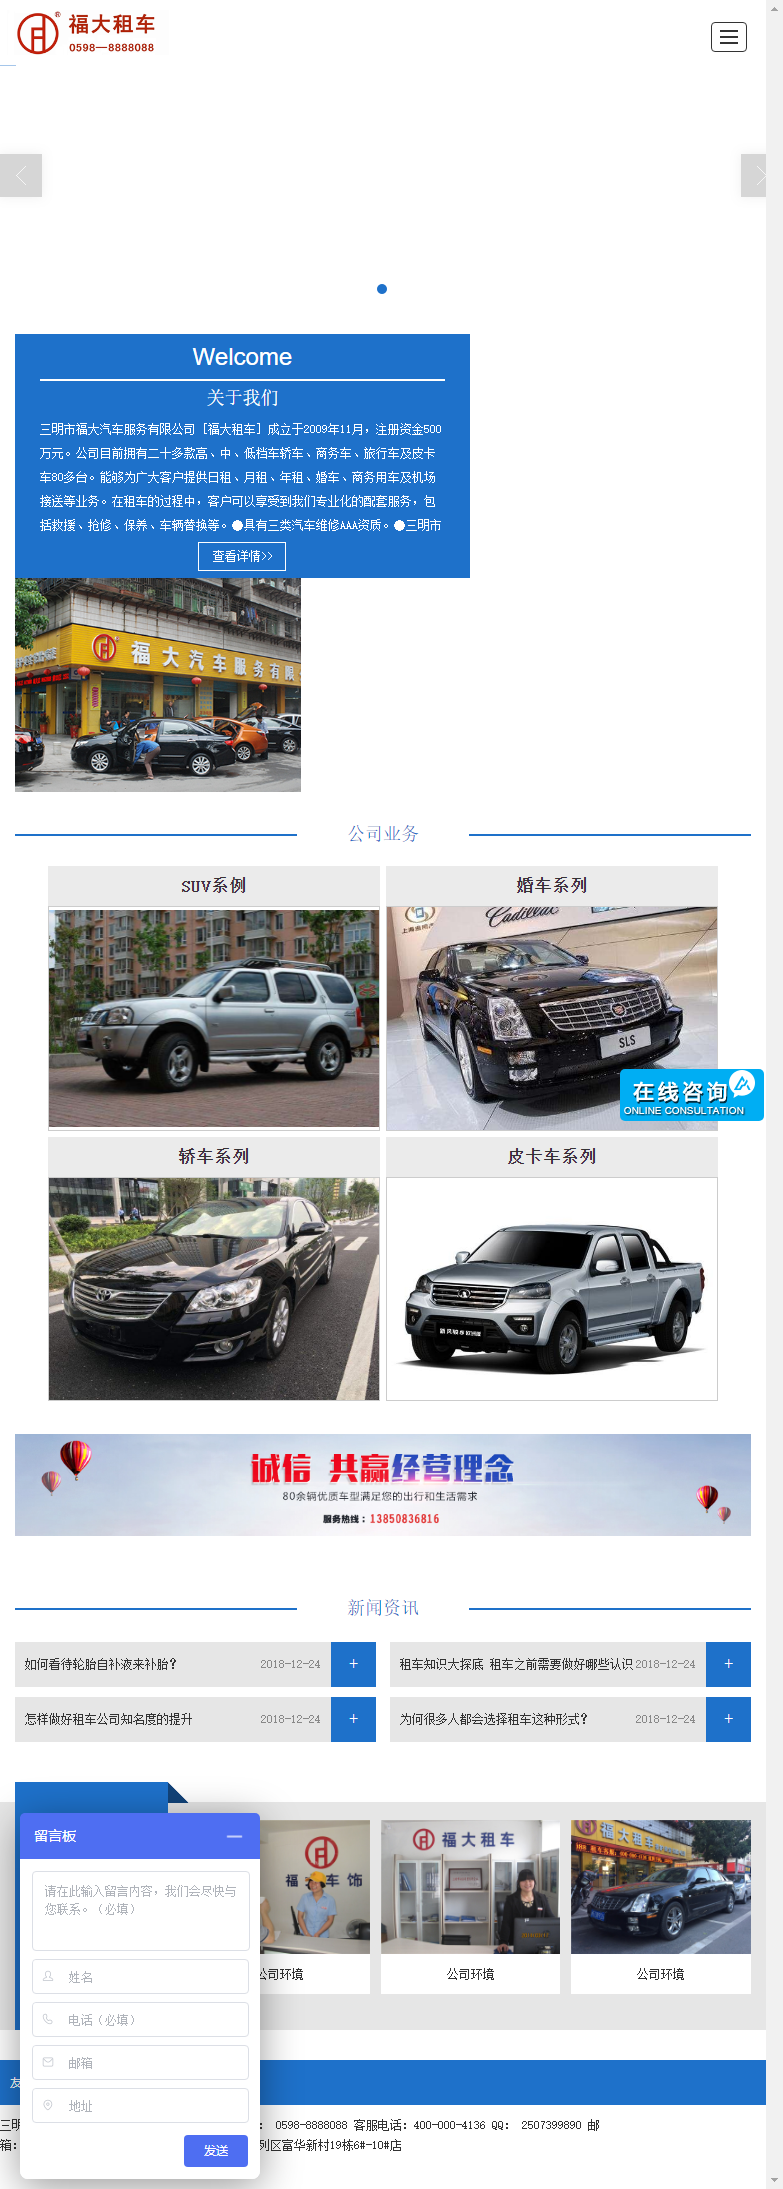 三明市福大汽车服务有限公司网站案例